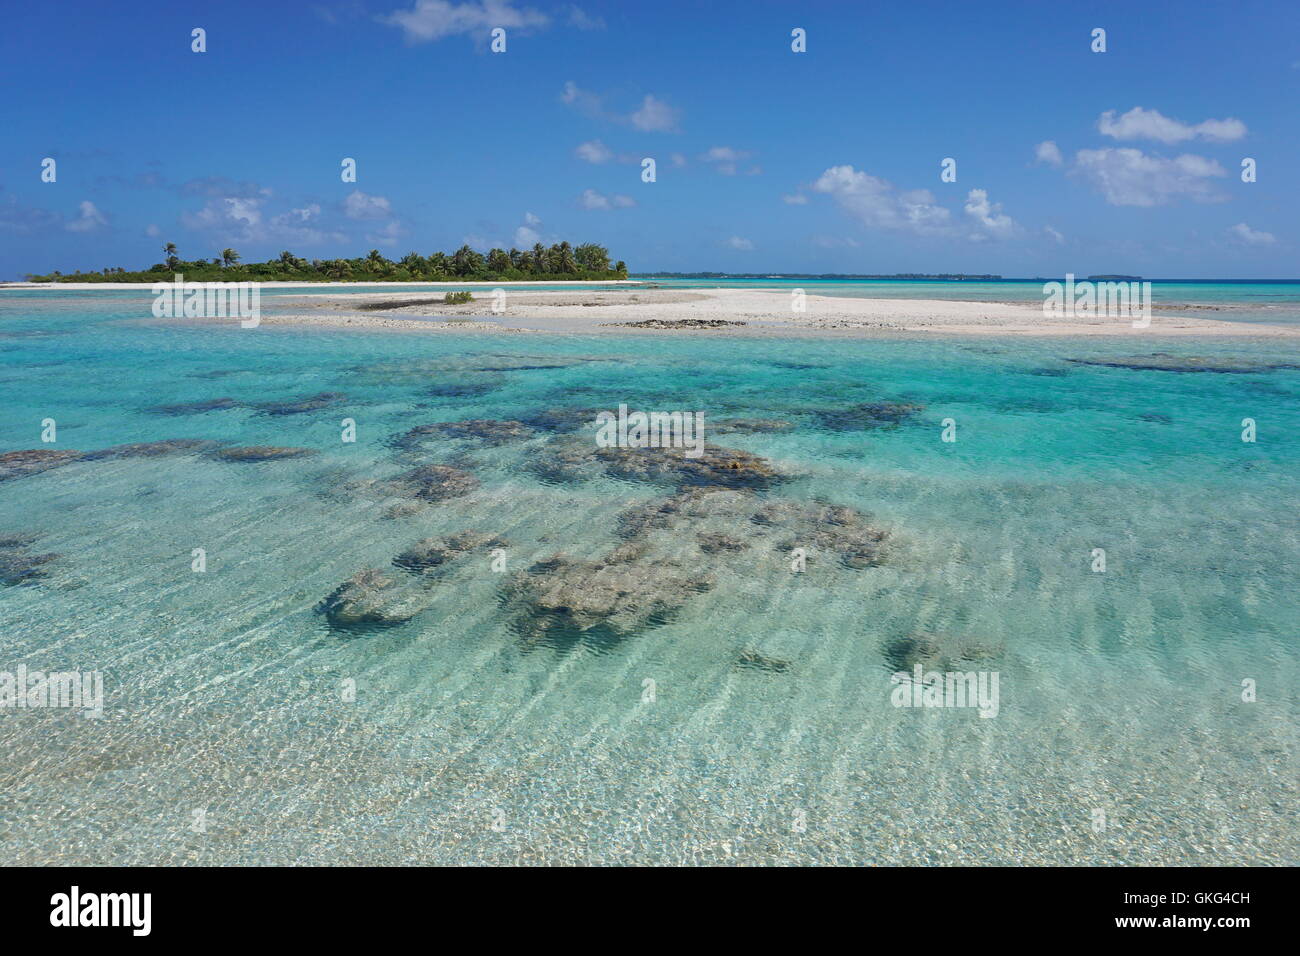 Chenal peu profond (hoa) entre les îlots que link l'intérieur du lagon à l'océan, de l'atoll de Tikehau, Tuamotu , Polynésie Française Banque D'Images